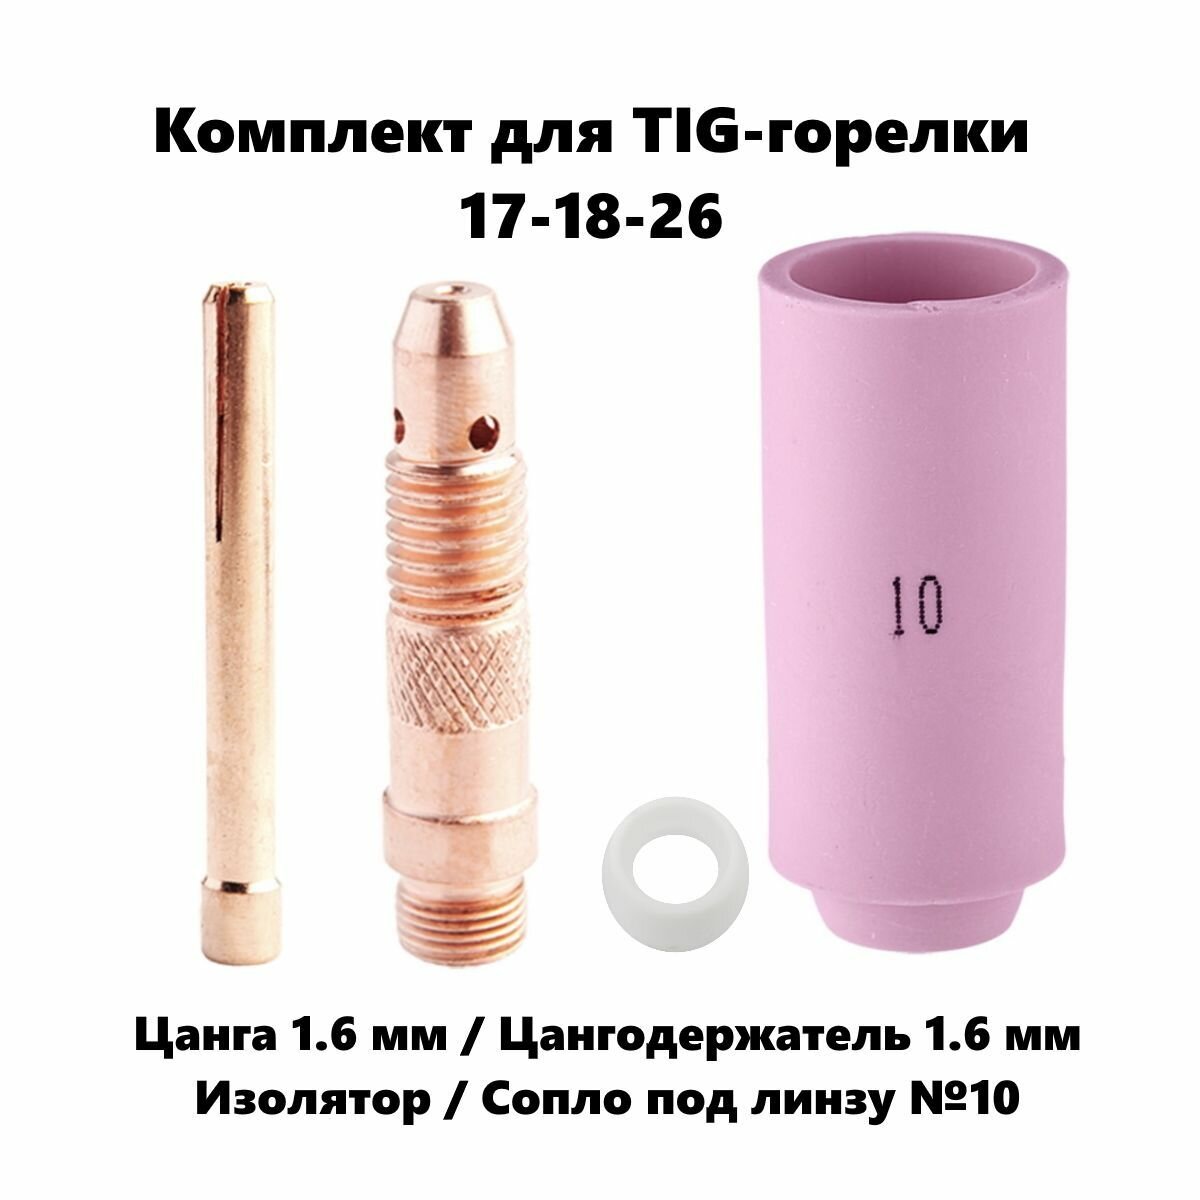 Набор 1.6 мм цанга Сопло керамическое №10 цангодержатель изолятор для TIG горелки (17-18-26)